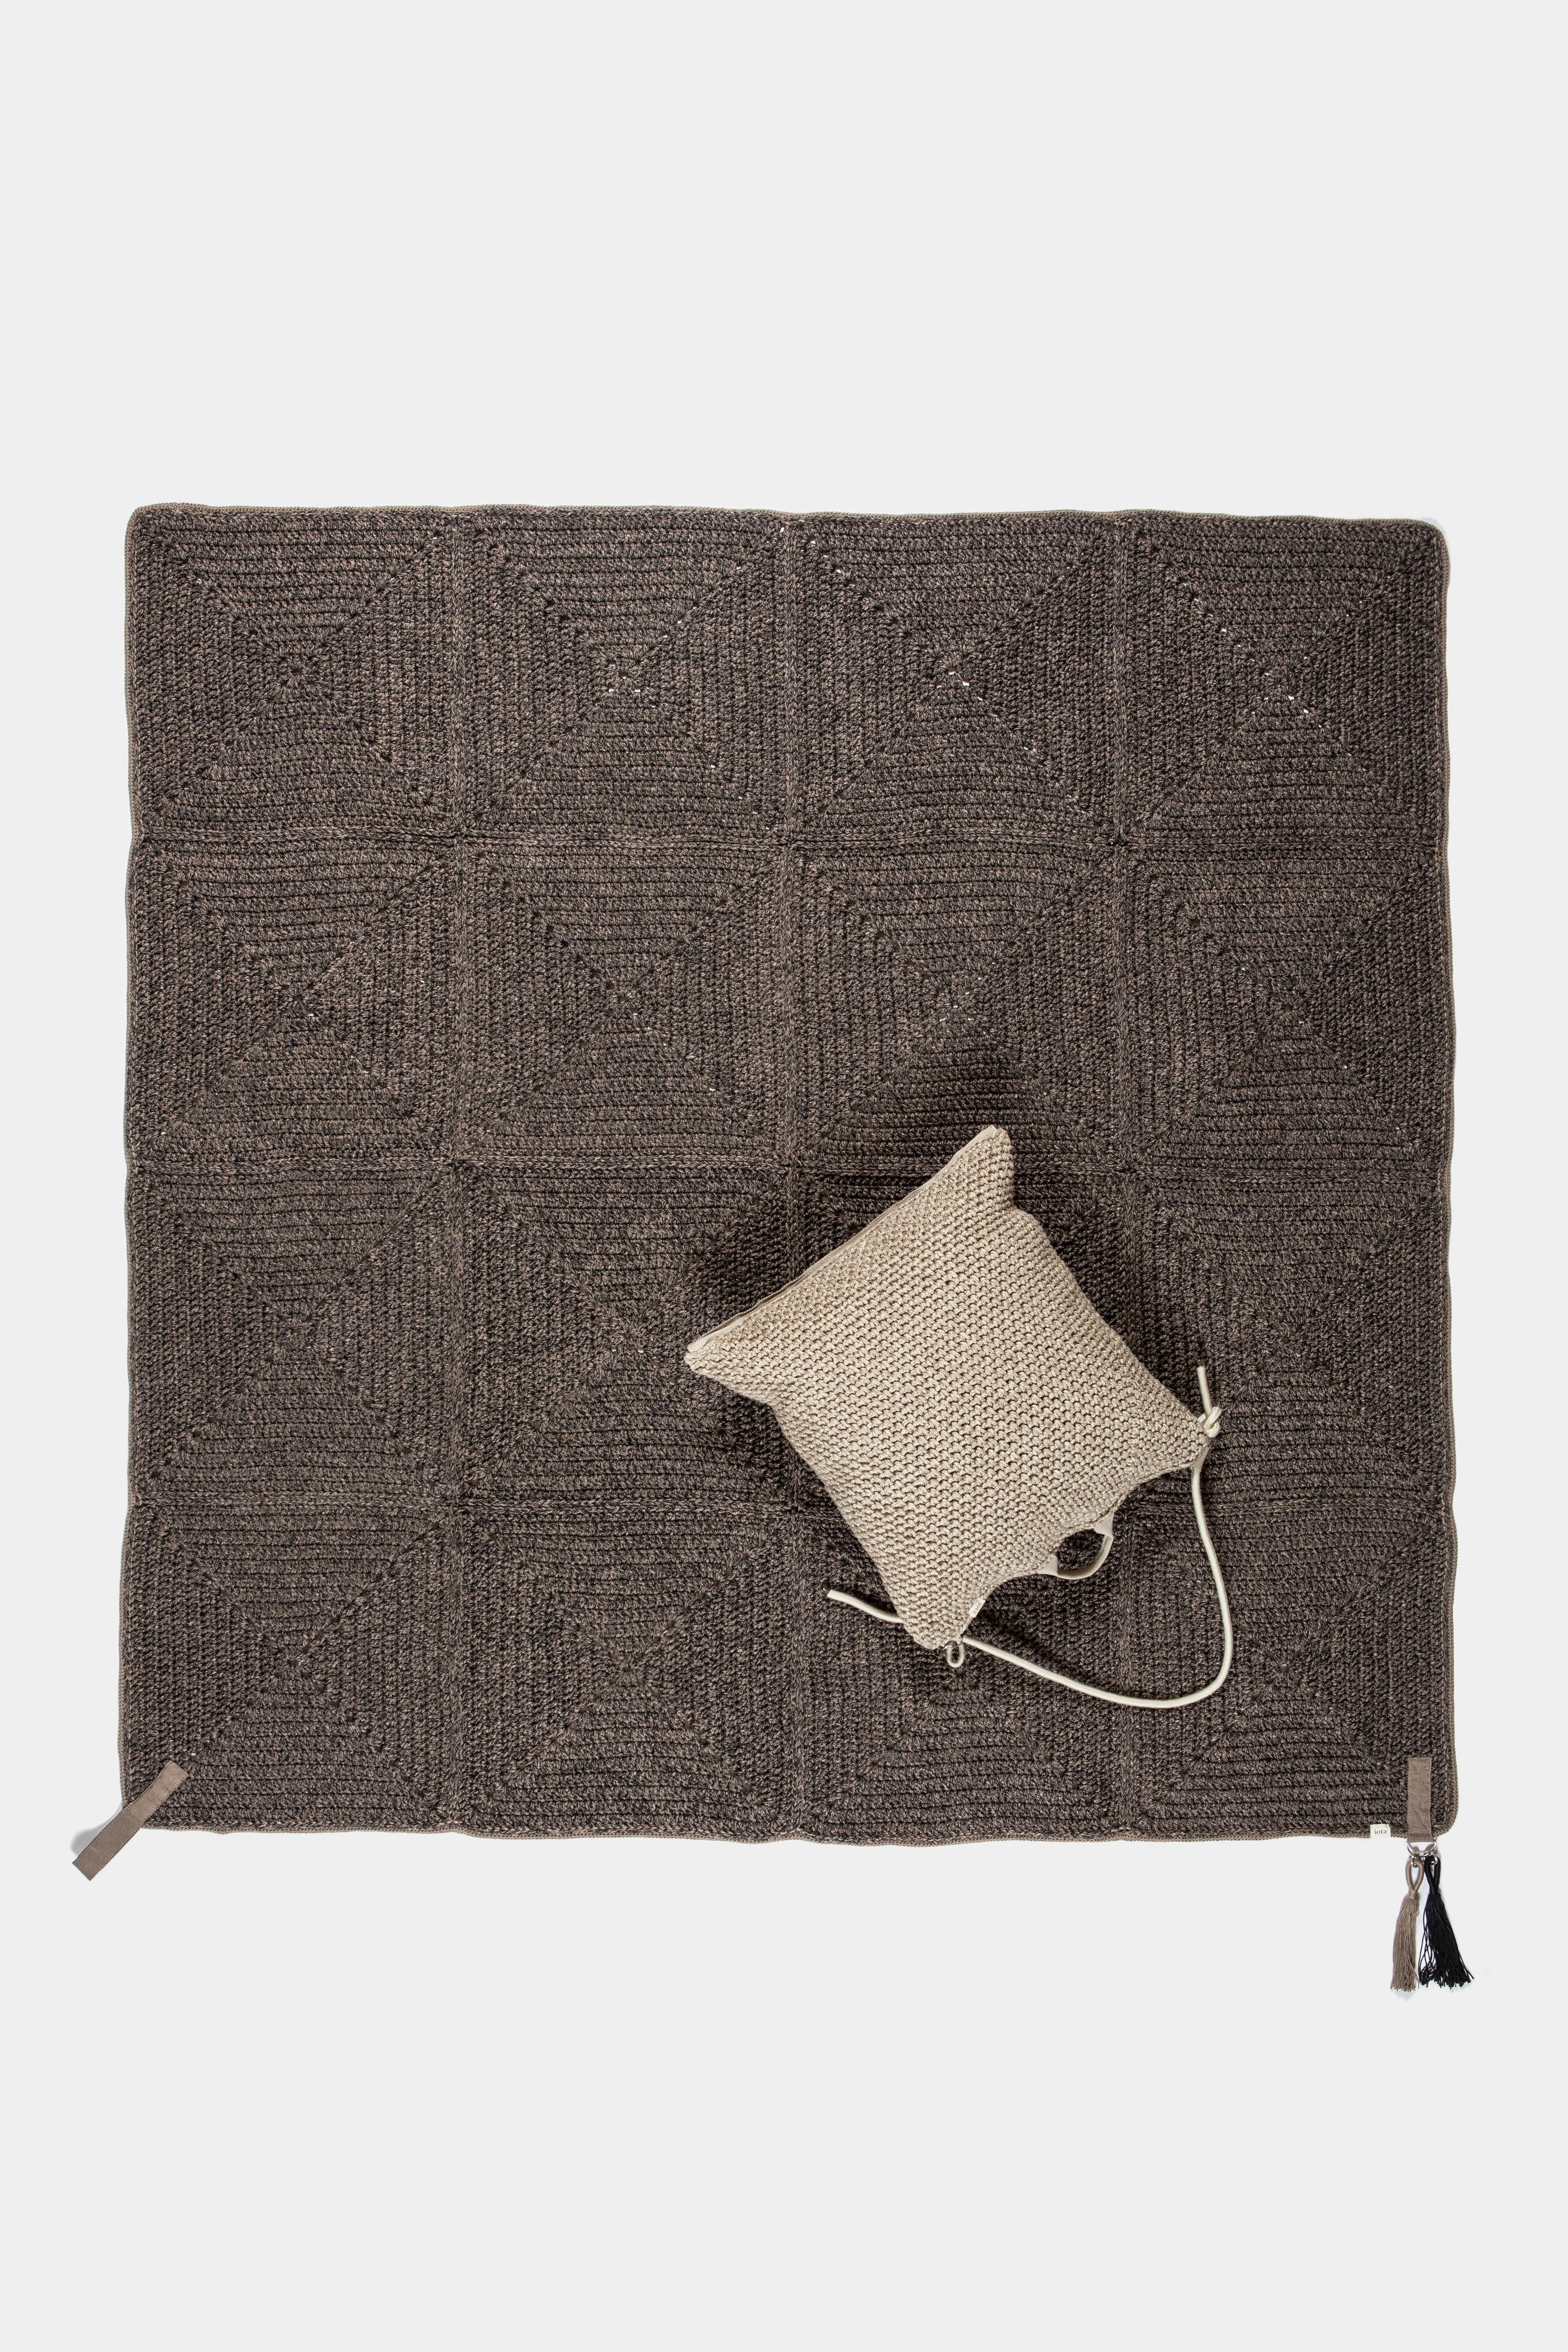 21st Century Asian Brown Black Outdoor Indoor 200x200 cm Handmade Crochet Rug 3